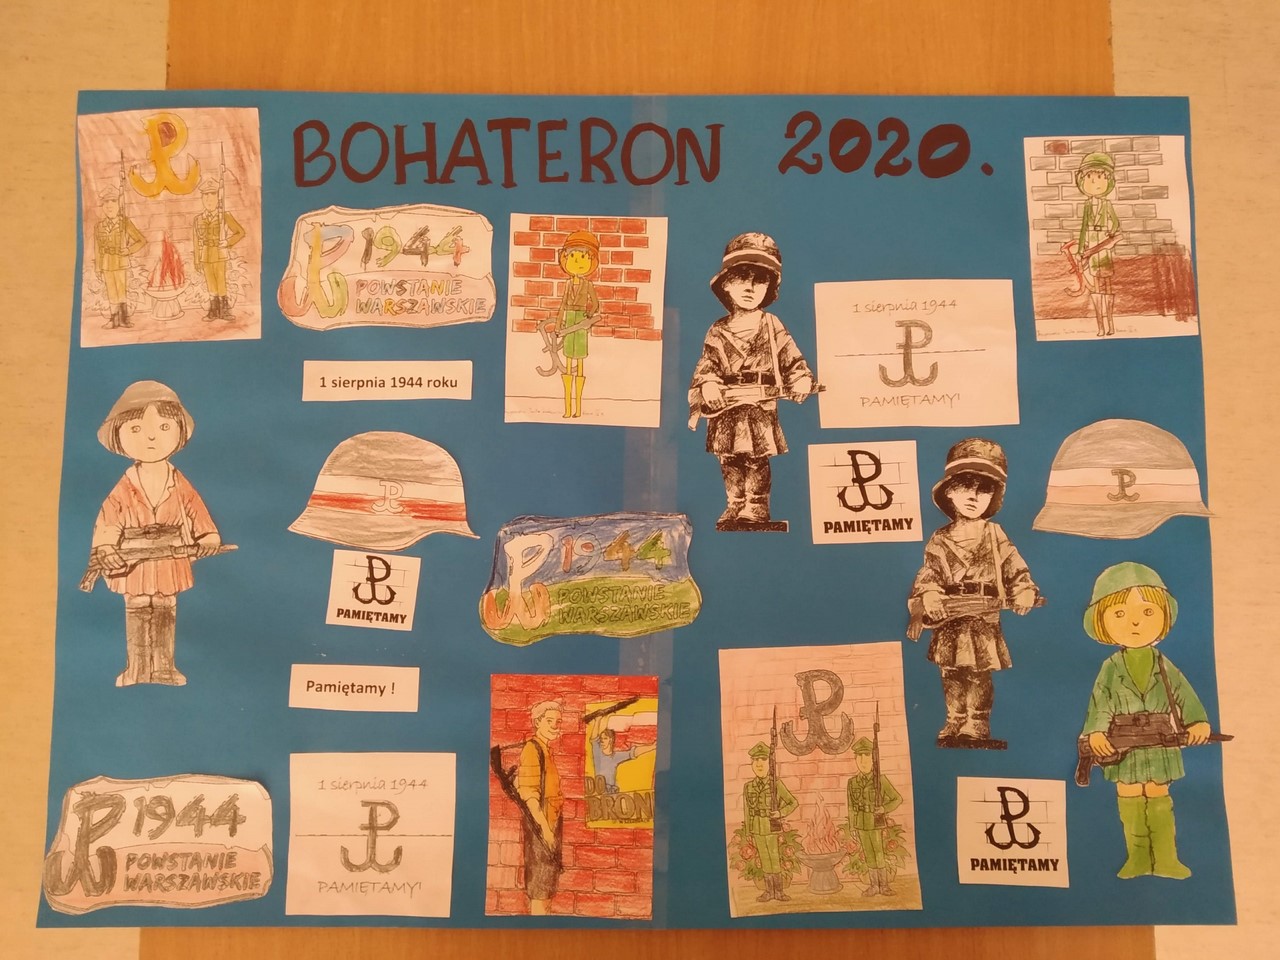 BohaterON -2020